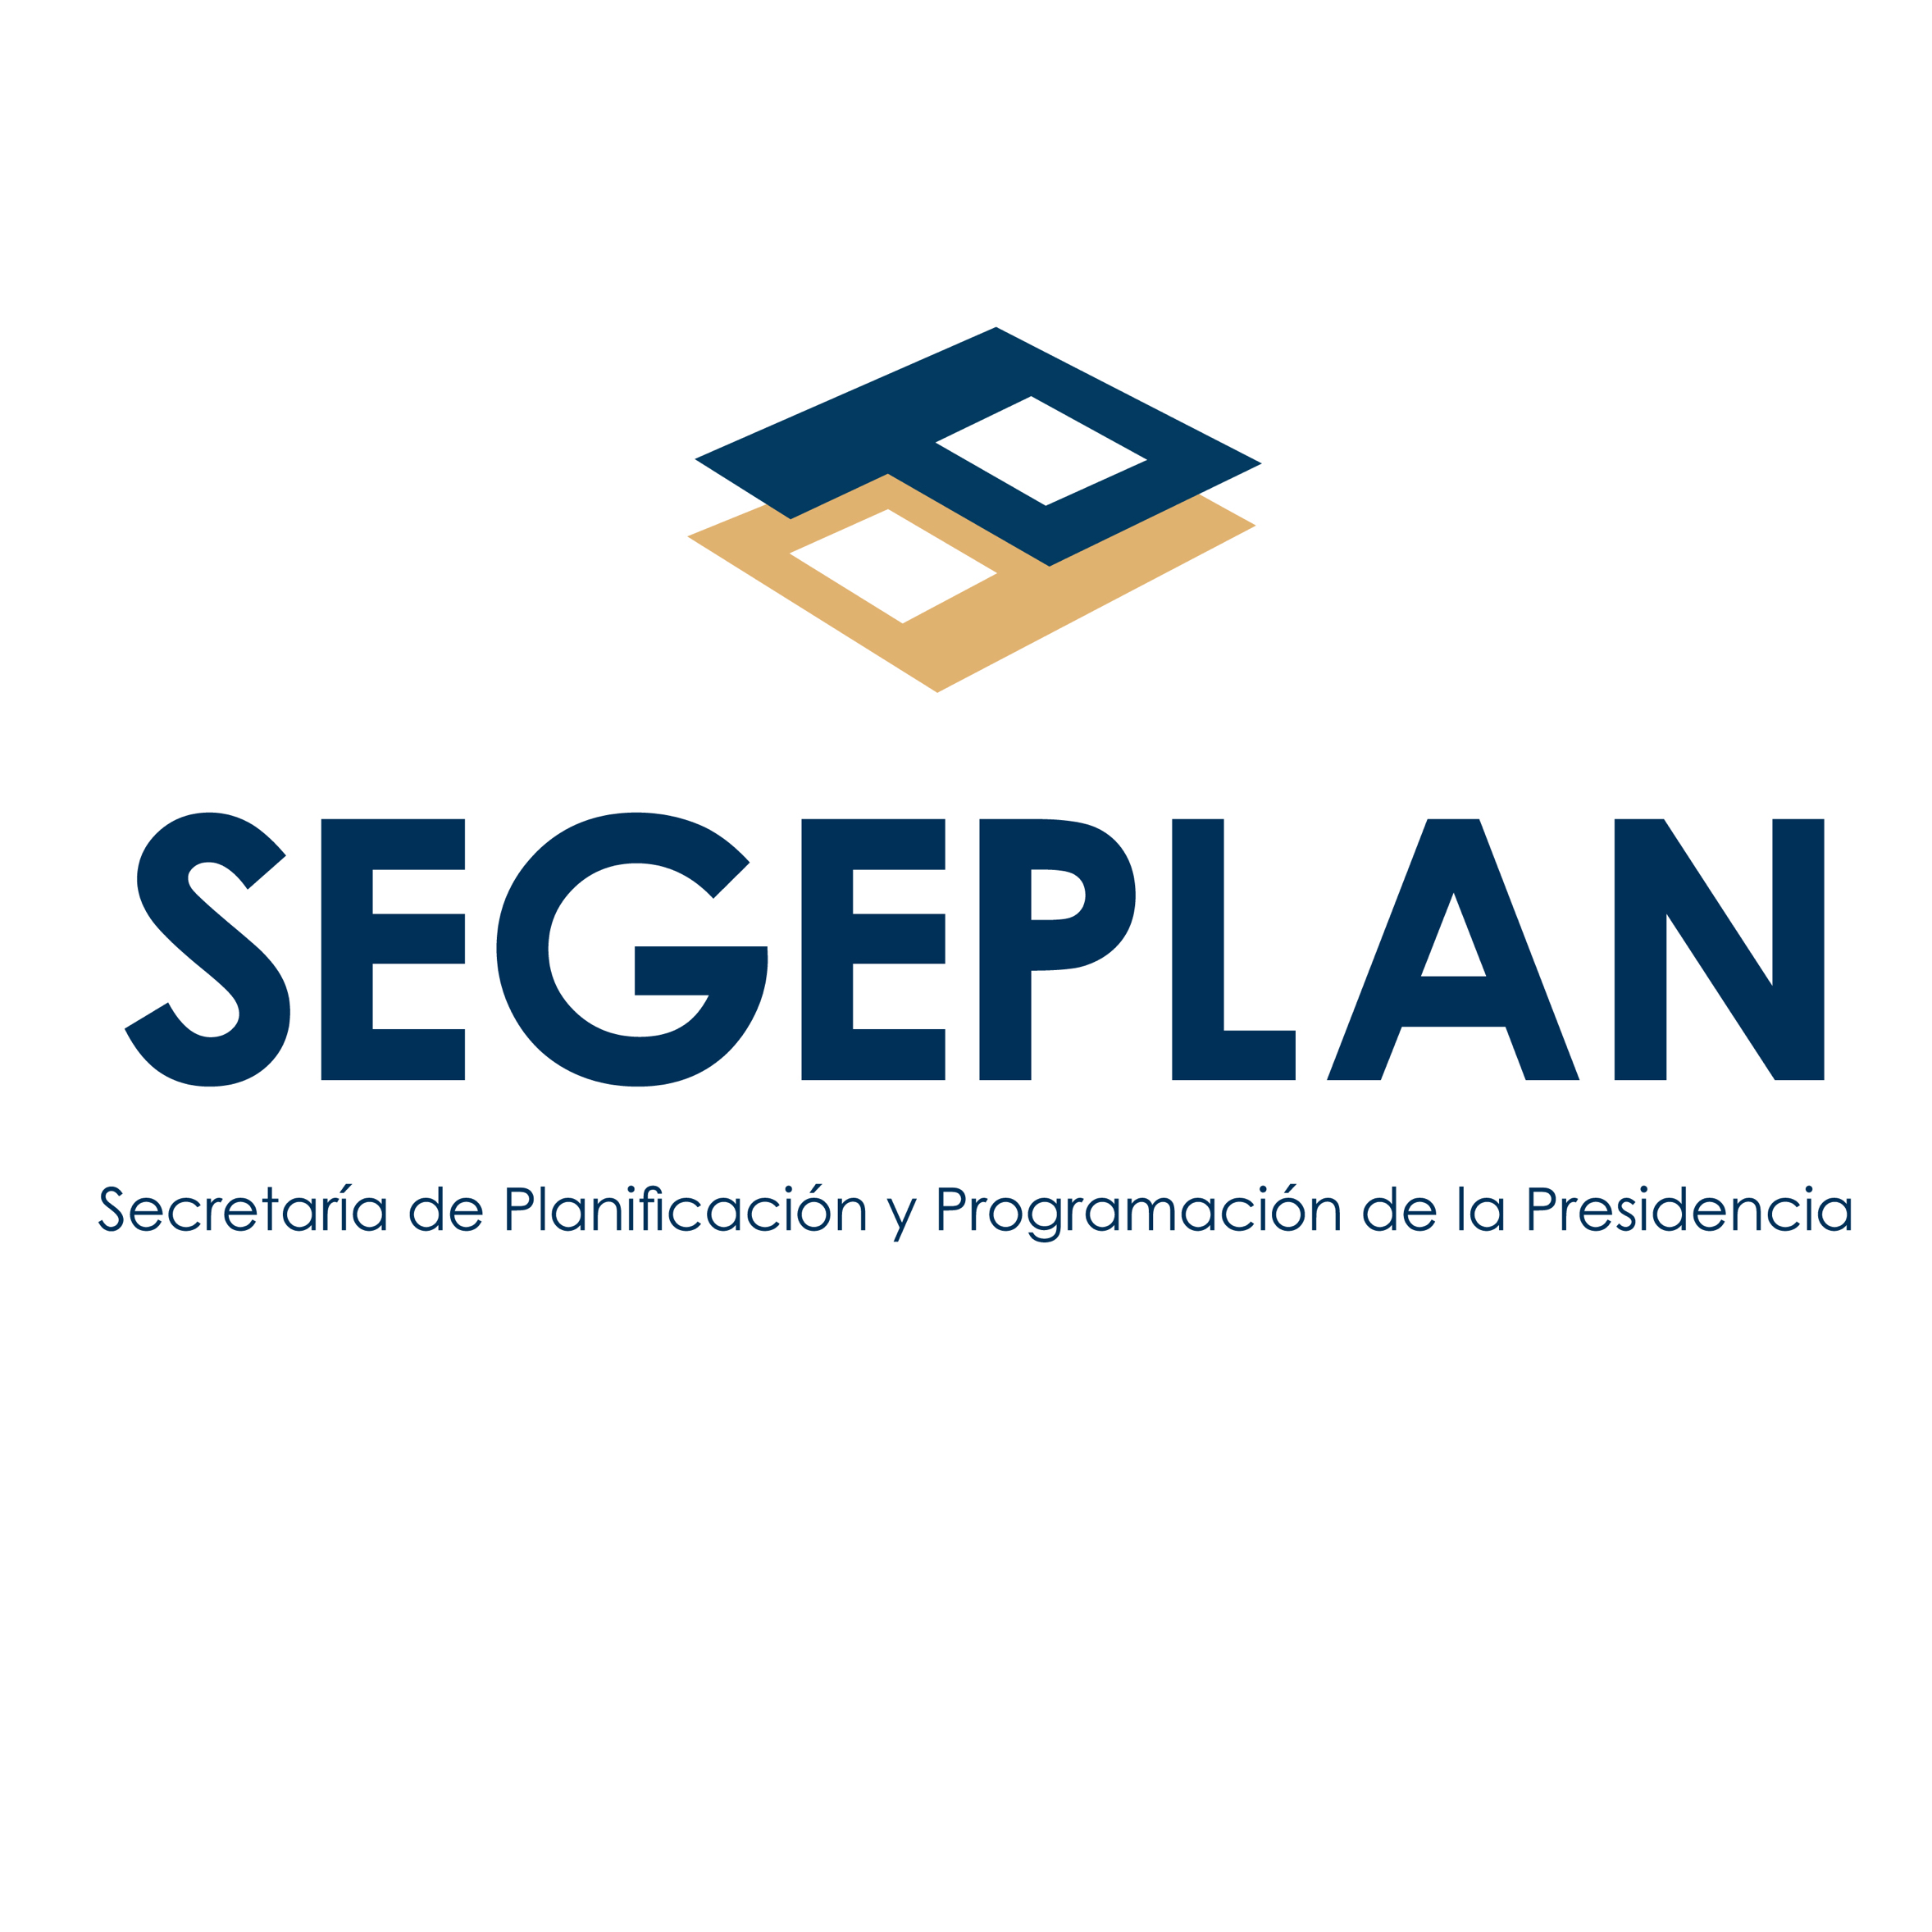 Planning and Programming Secretariat of the Presidency of Guatemala (SEGEPLAN)